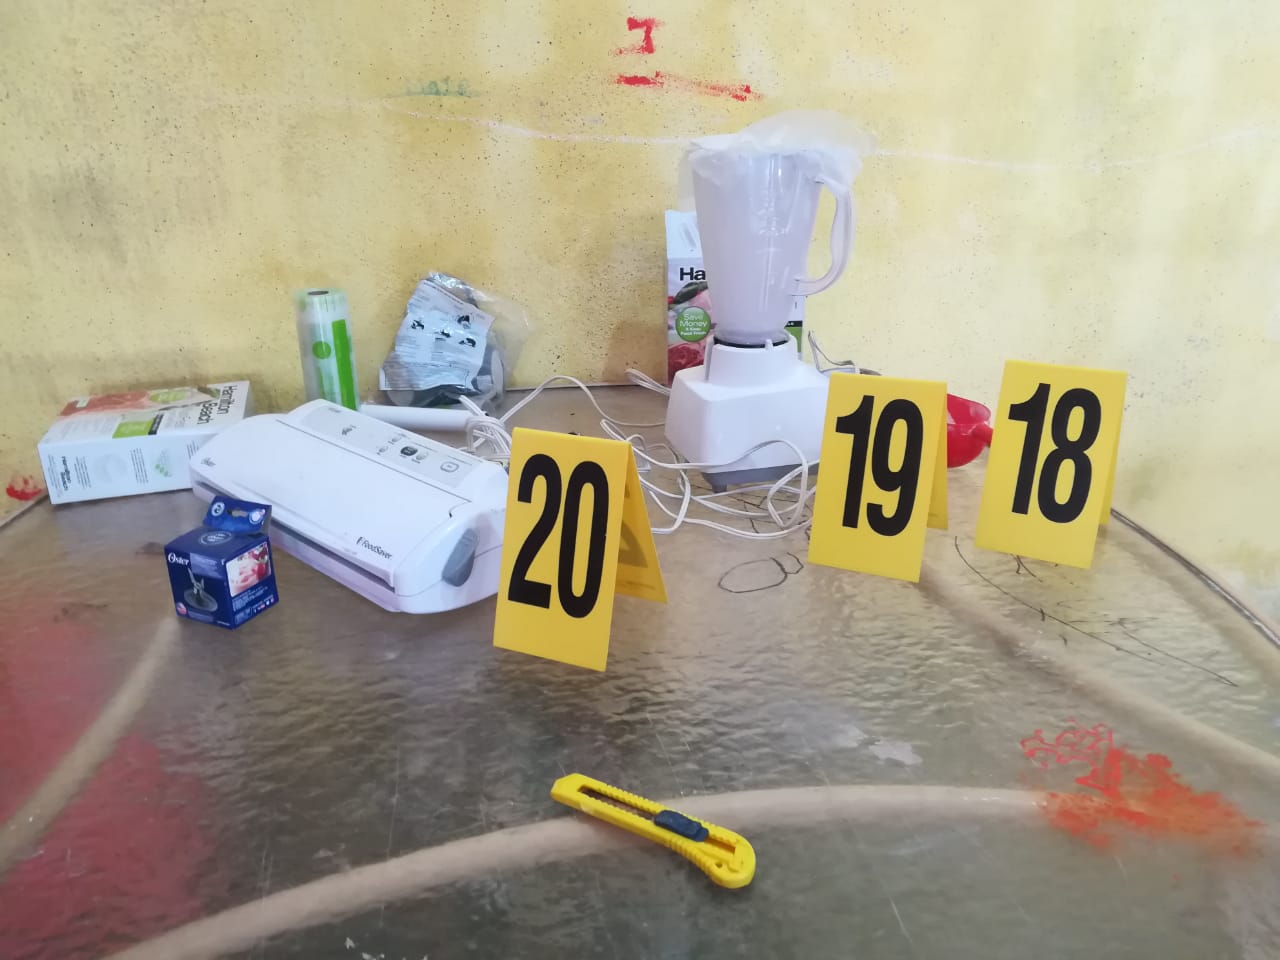 Personal antinarcóticos revisa inmueble donde hallaron un laboratorio clandestino. (Foto Prensa Libre: Cortesía)